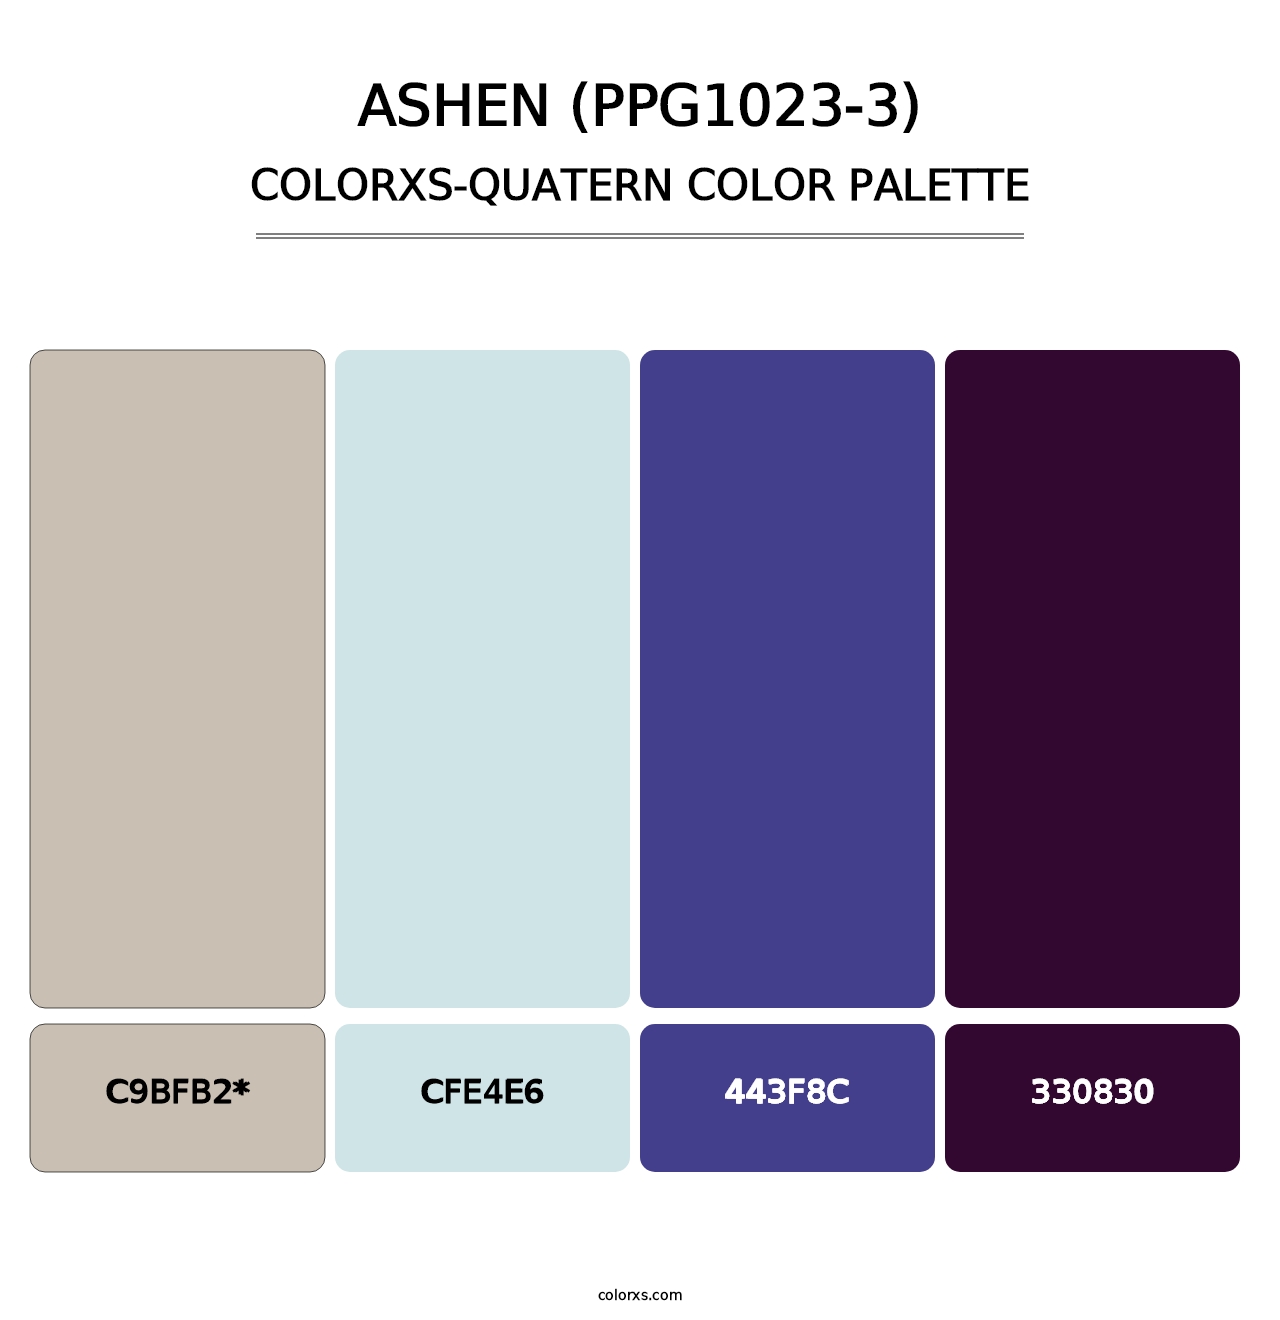 Ashen (PPG1023-3) - Colorxs Quatern Palette